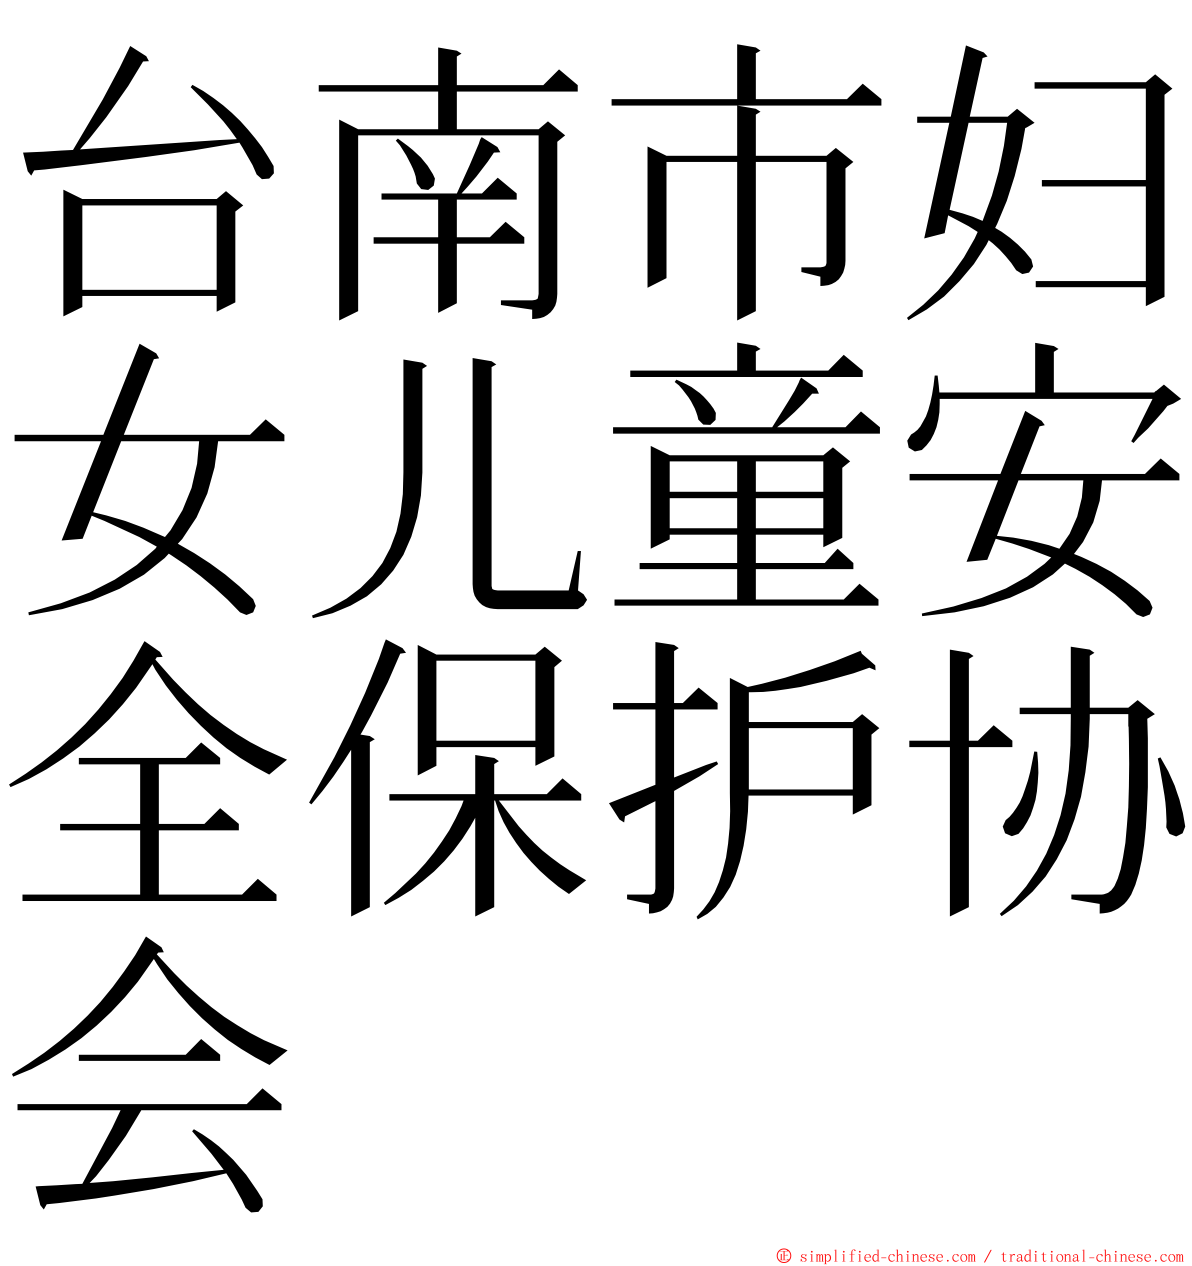 台南市妇女儿童安全保护协会 ming font